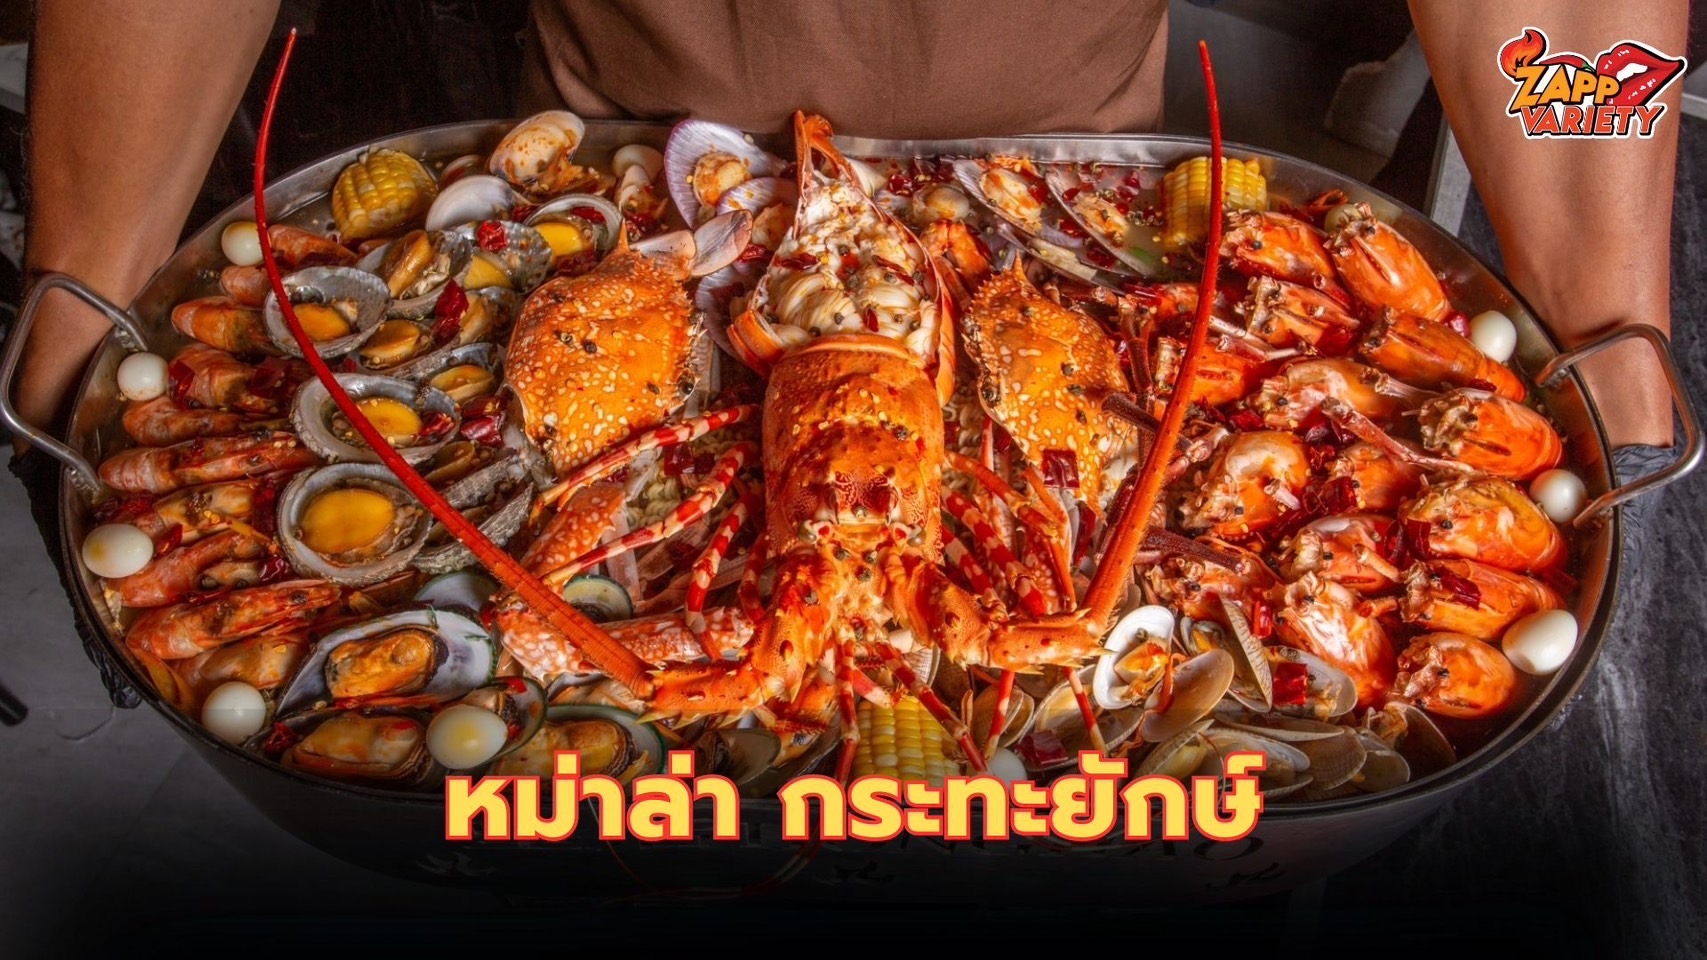 ที่สุดของความใหญ่ “ฮองเฮาซีฟู้ด หม่าล่า” เสิร์ฟเมนูเด็ด บนกระทะยักษ์ ที่เดียวในไทย!! การันตีรสชาติหม่าล่า อร่อย แซ่บ เผ็ดร้อน แต่ไม่แสบลิ้น